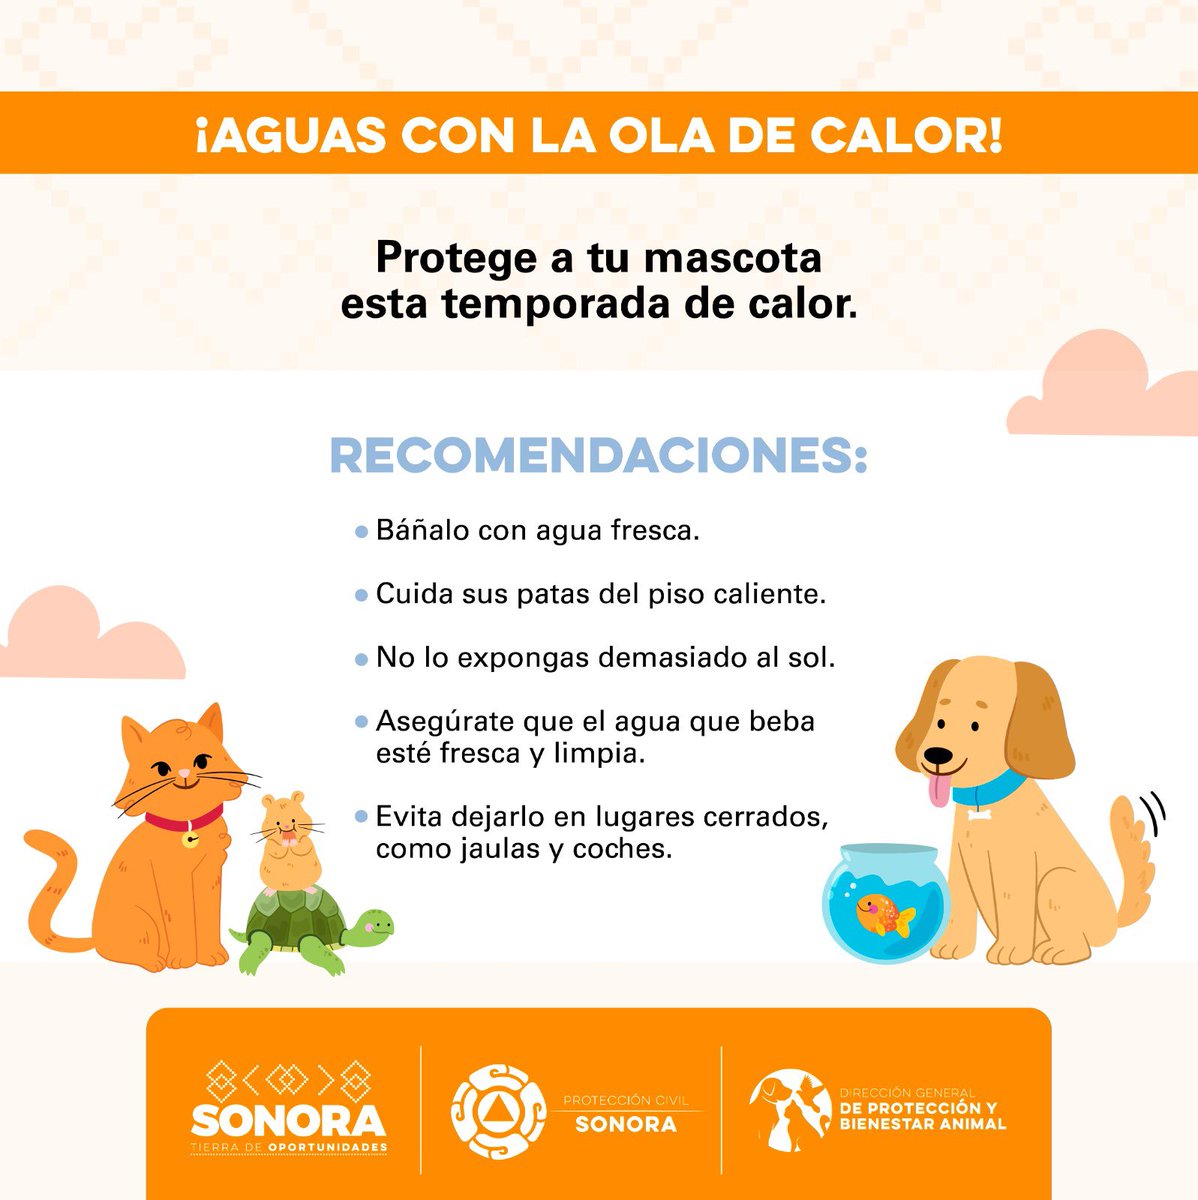 🟠 Recuerda también proteger a las mascotas ante la ola de calor en #Sonora.

#CompromisosFirmes #TierraDeOportunidades